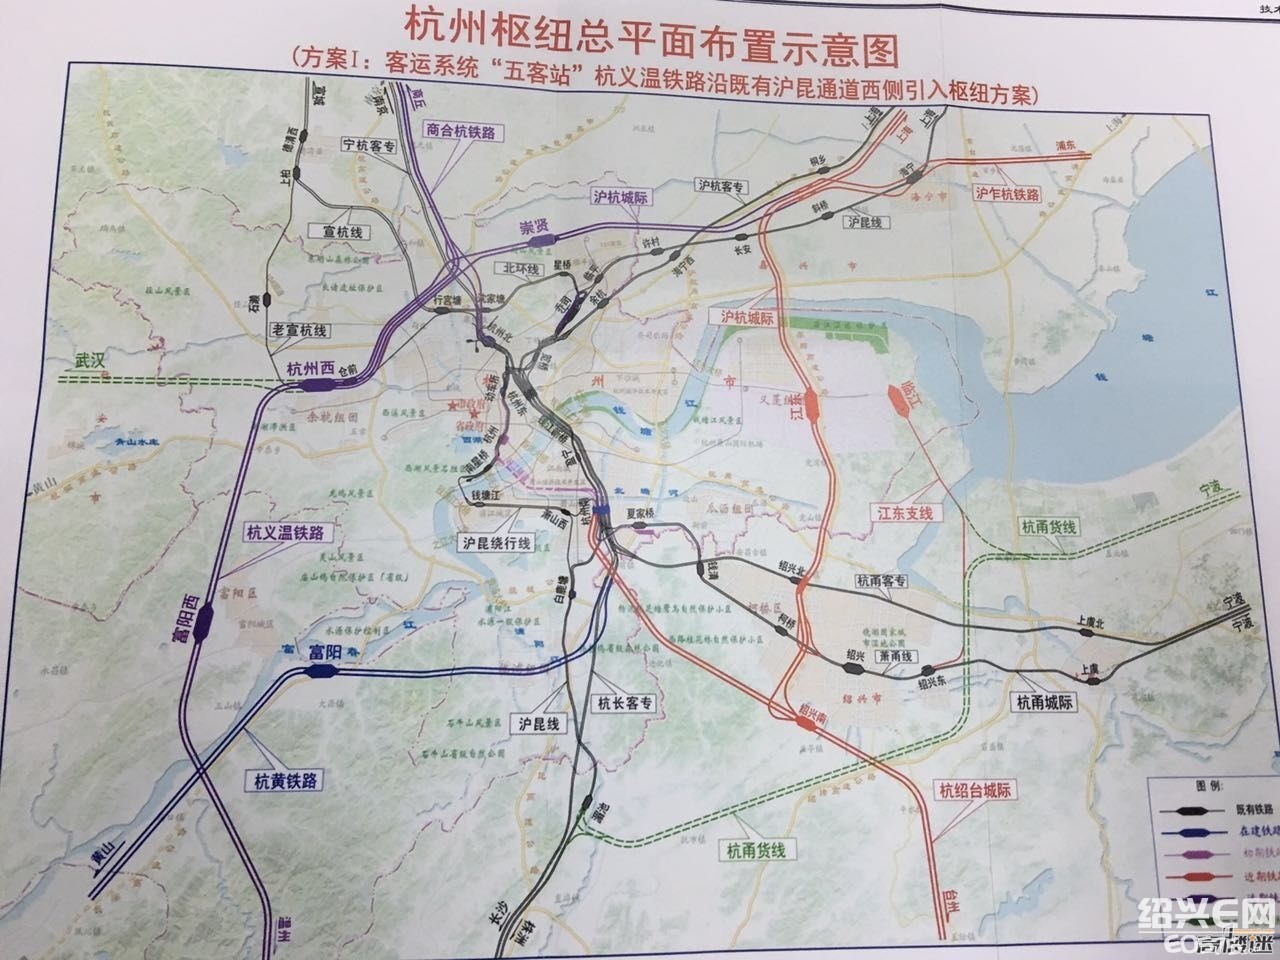 杭州铁路枢纽总图规划力争6月底批复(事关杭绍台)